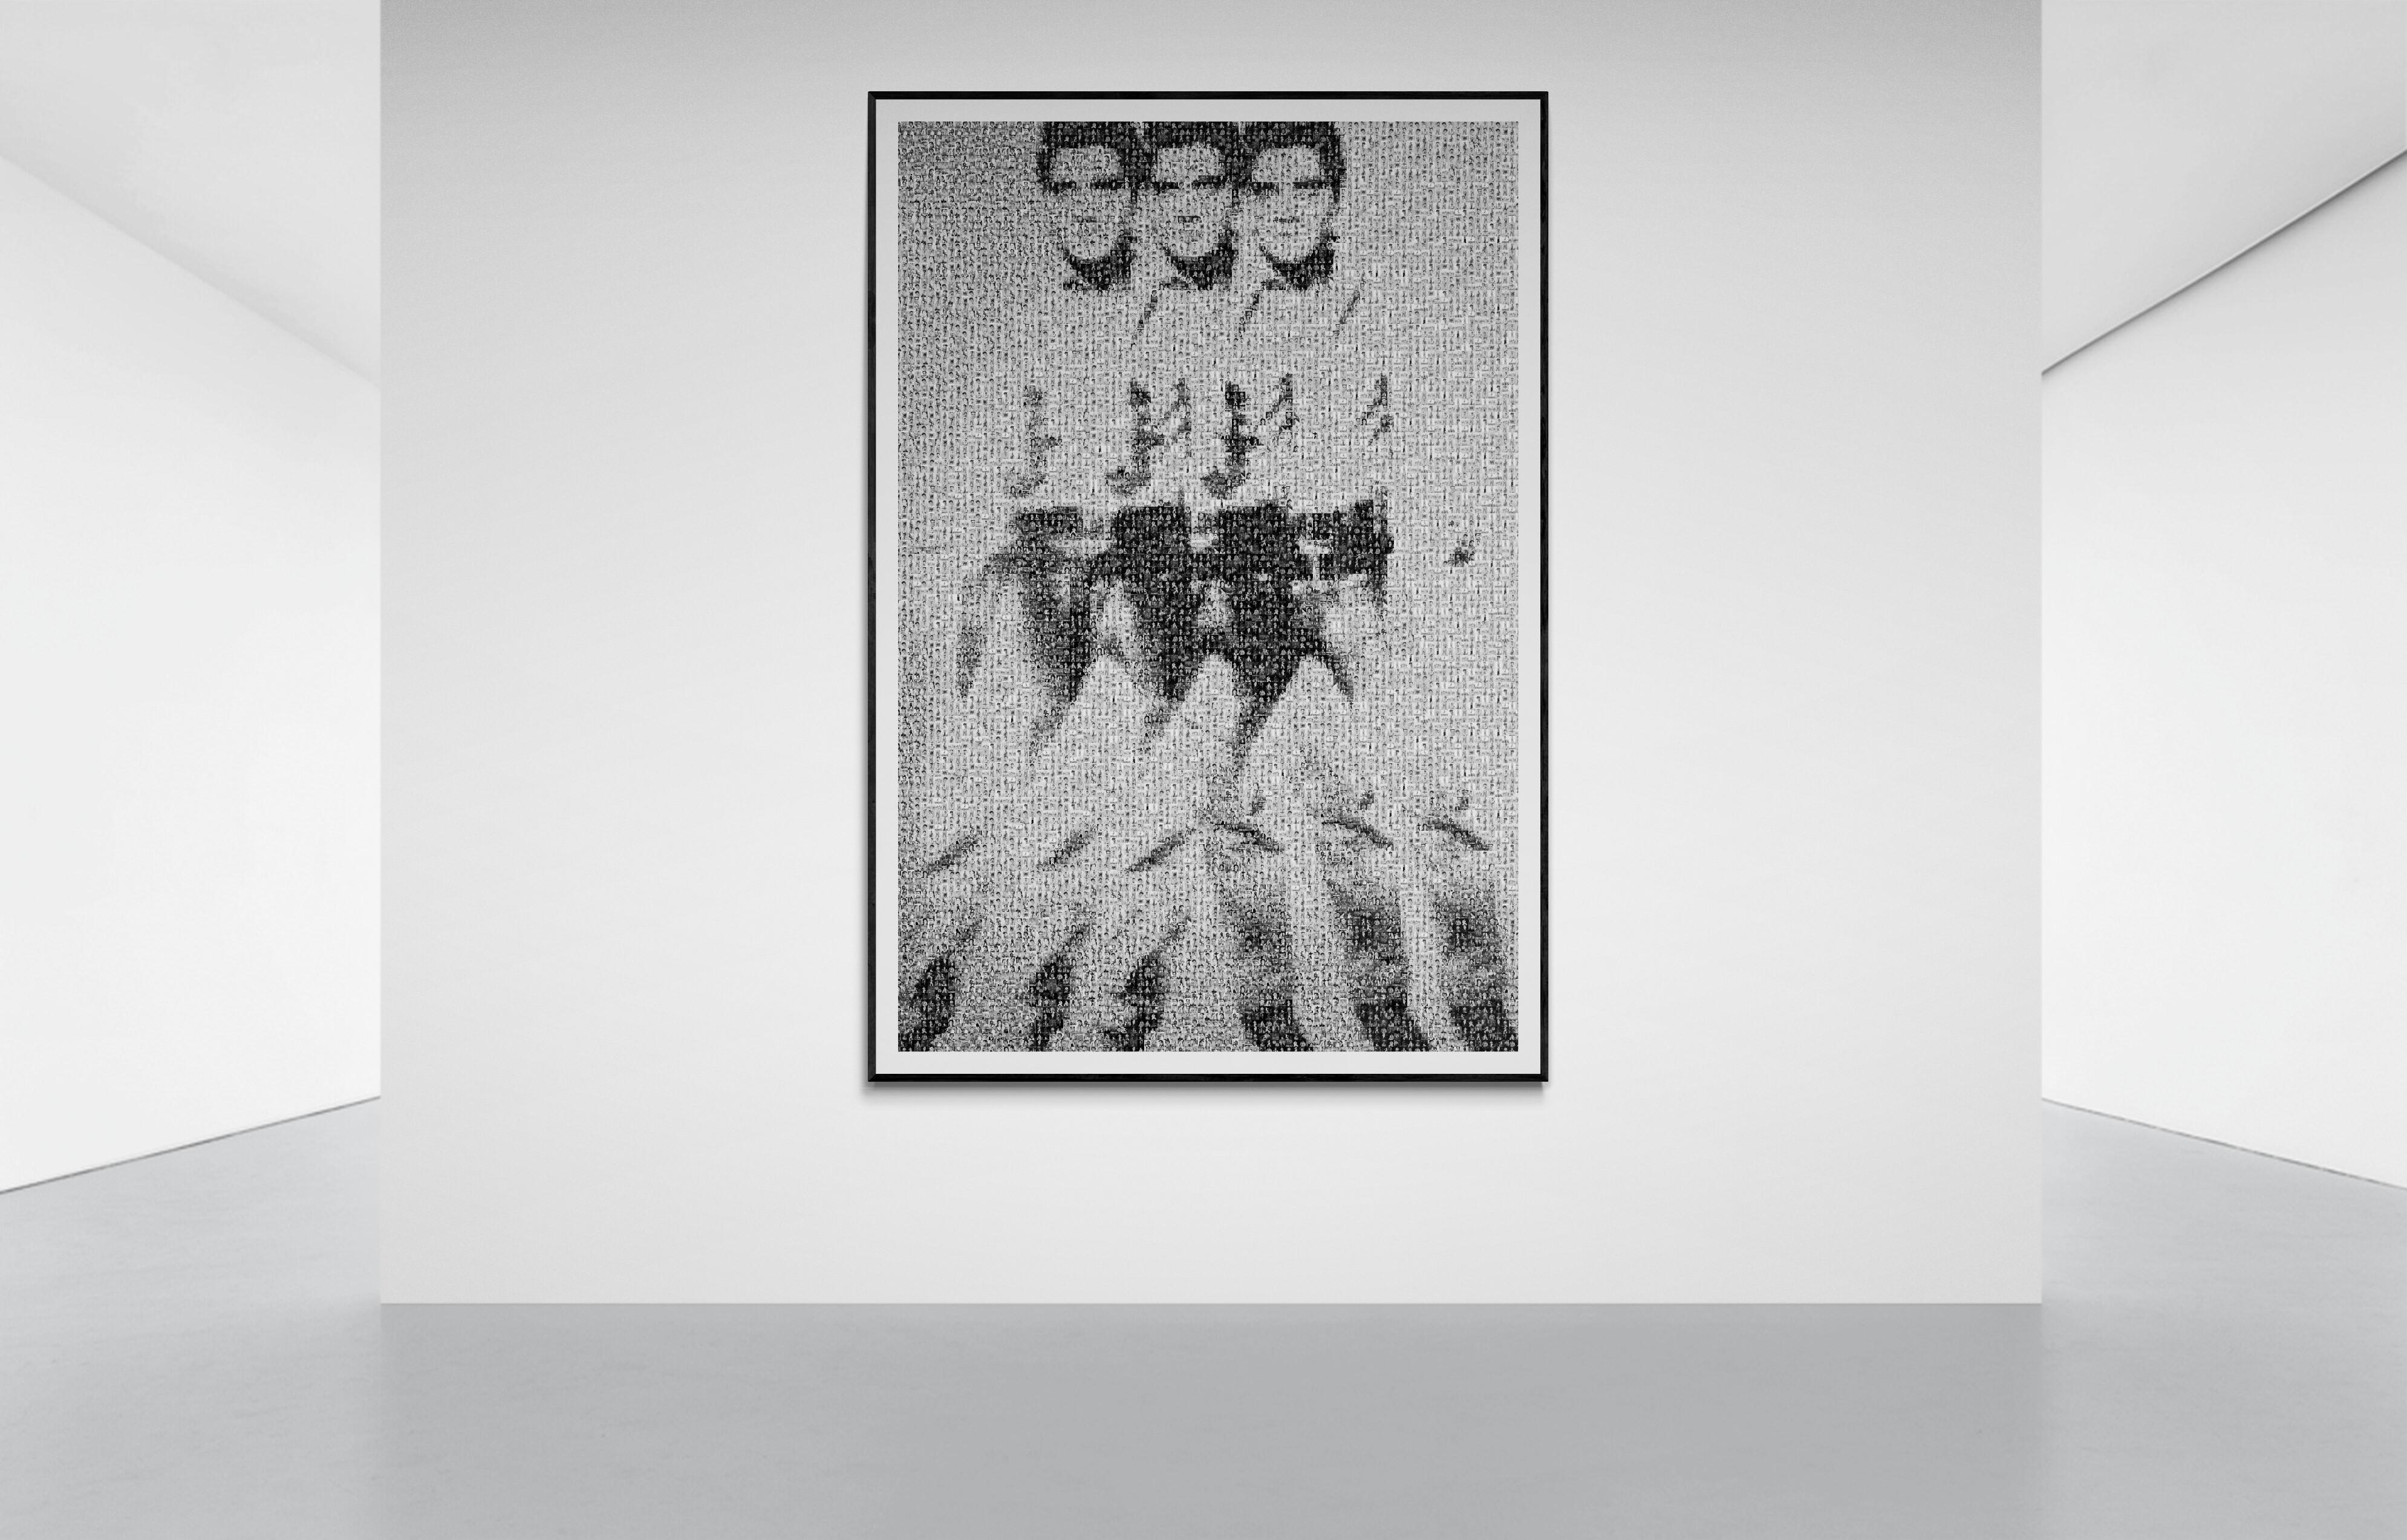 60x40  „Triple Elvis von Warhol“ Fotomosaik- Pop-Art-Fotografie, signiert (Amerikanische Moderne), Photograph, von Destro